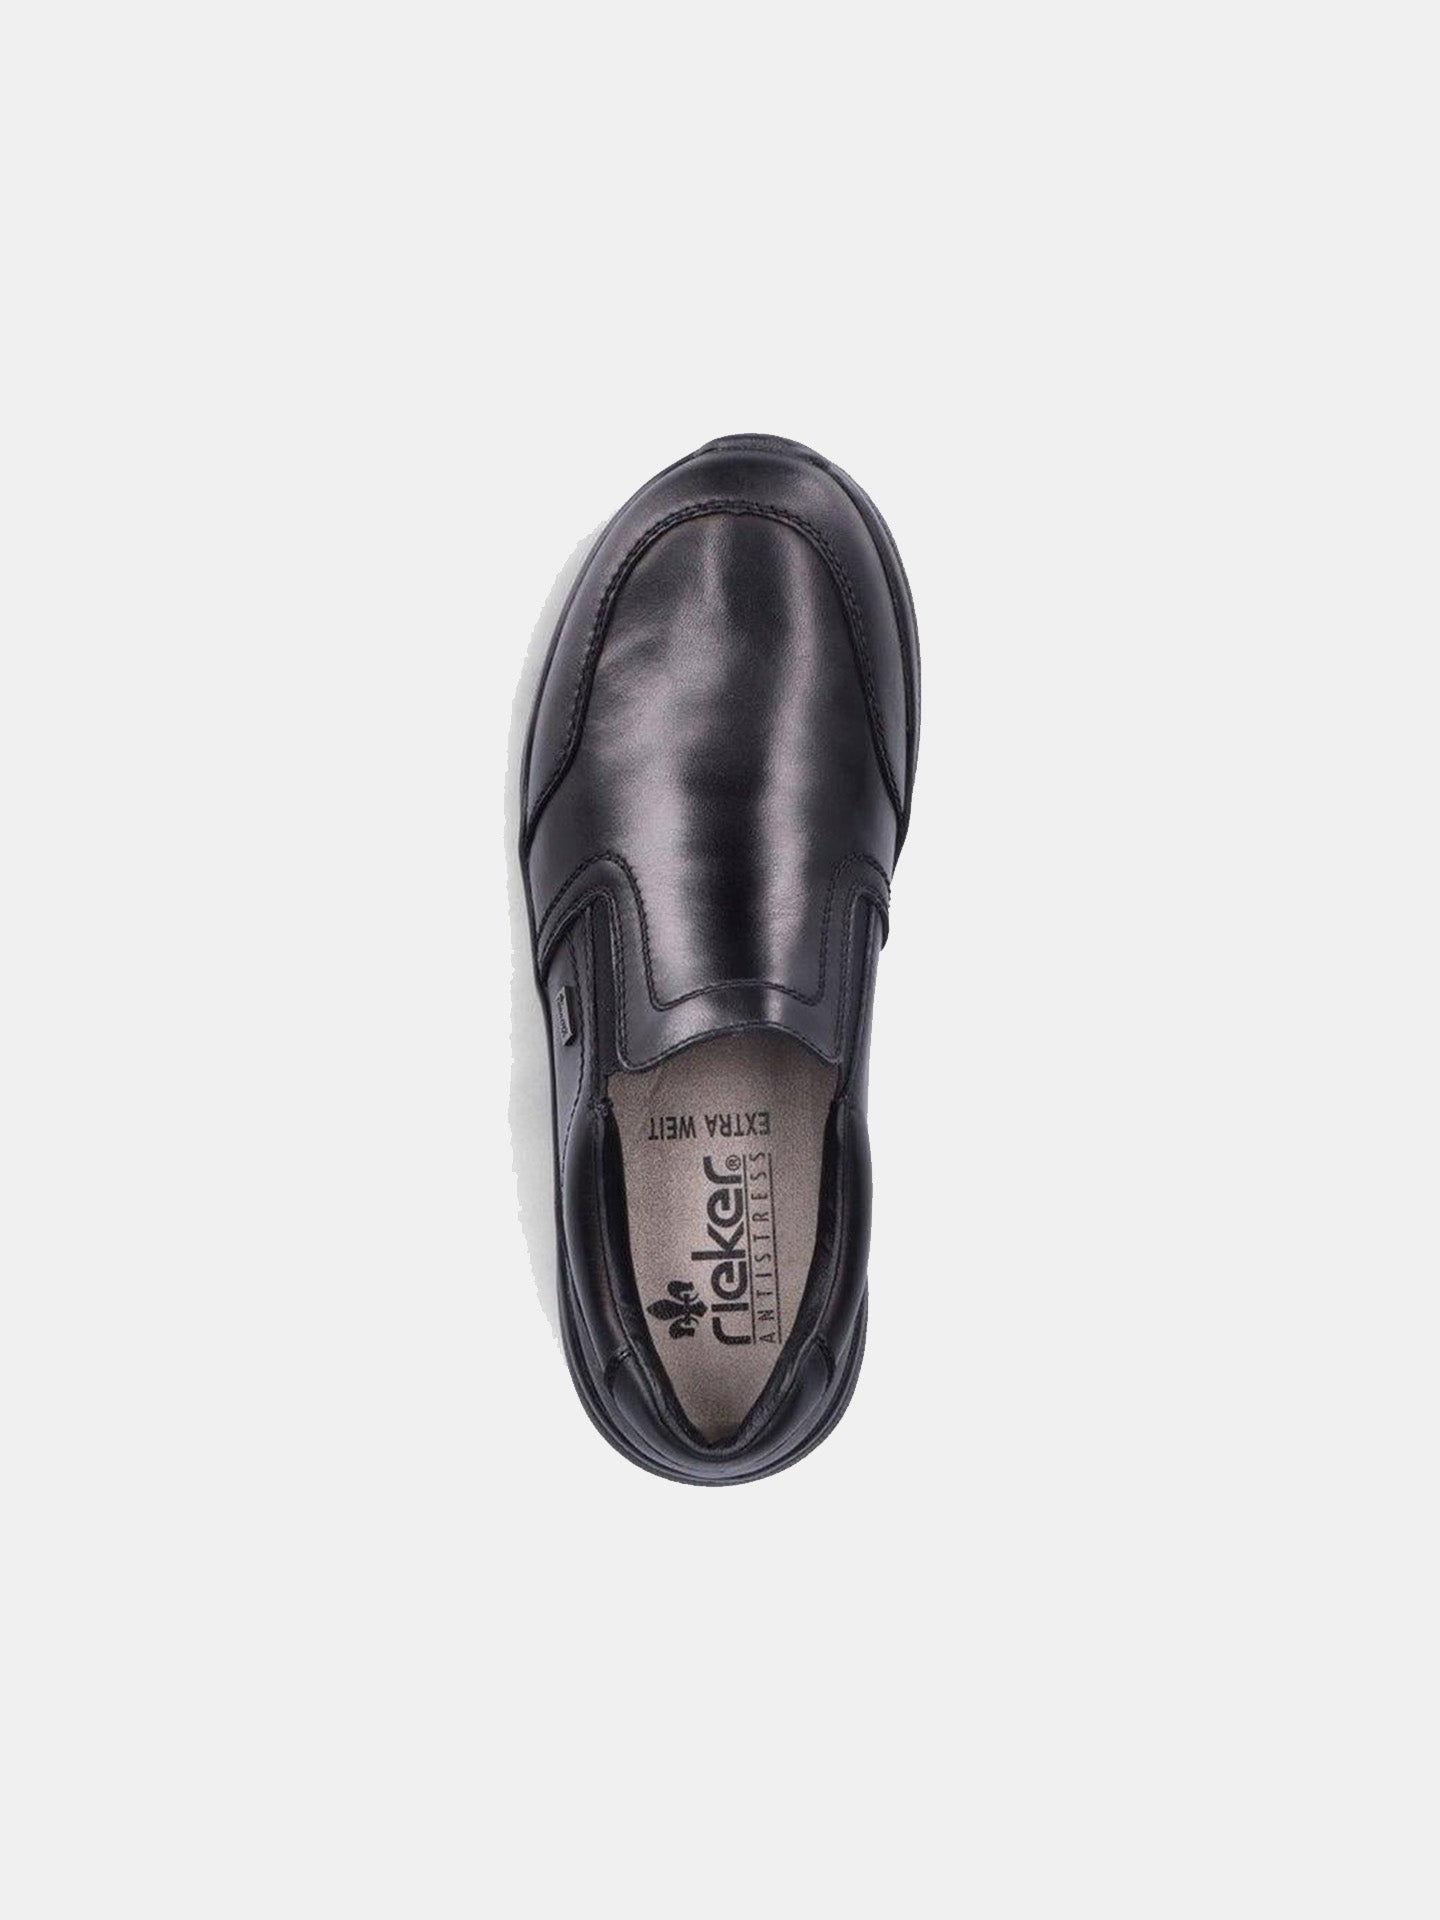 Rieker 14850 Men's Casual Shoes